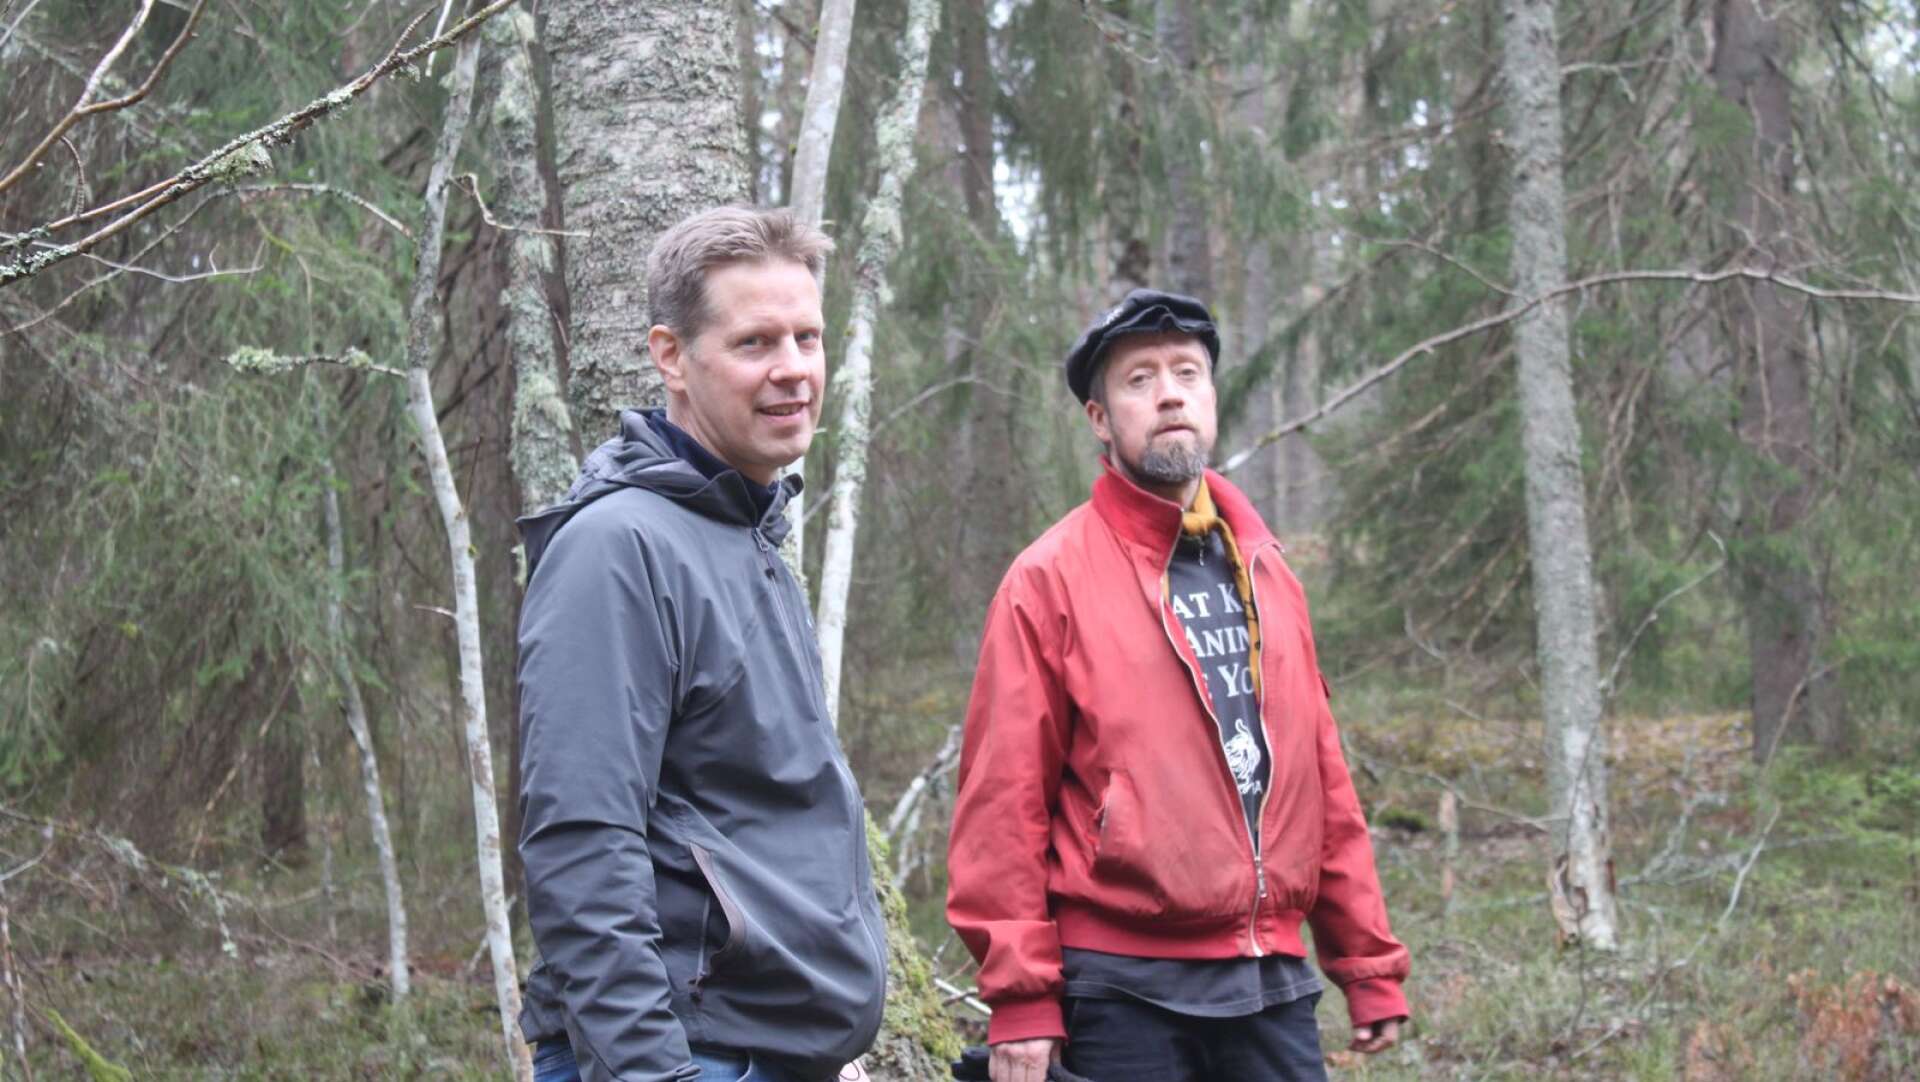 Värmland behöver mer av levande skogar, inte stora kalhyggen, menar Lars-Ola Westerlund och Joachim Nilsson, Naturskyddsföreningen Värmland.